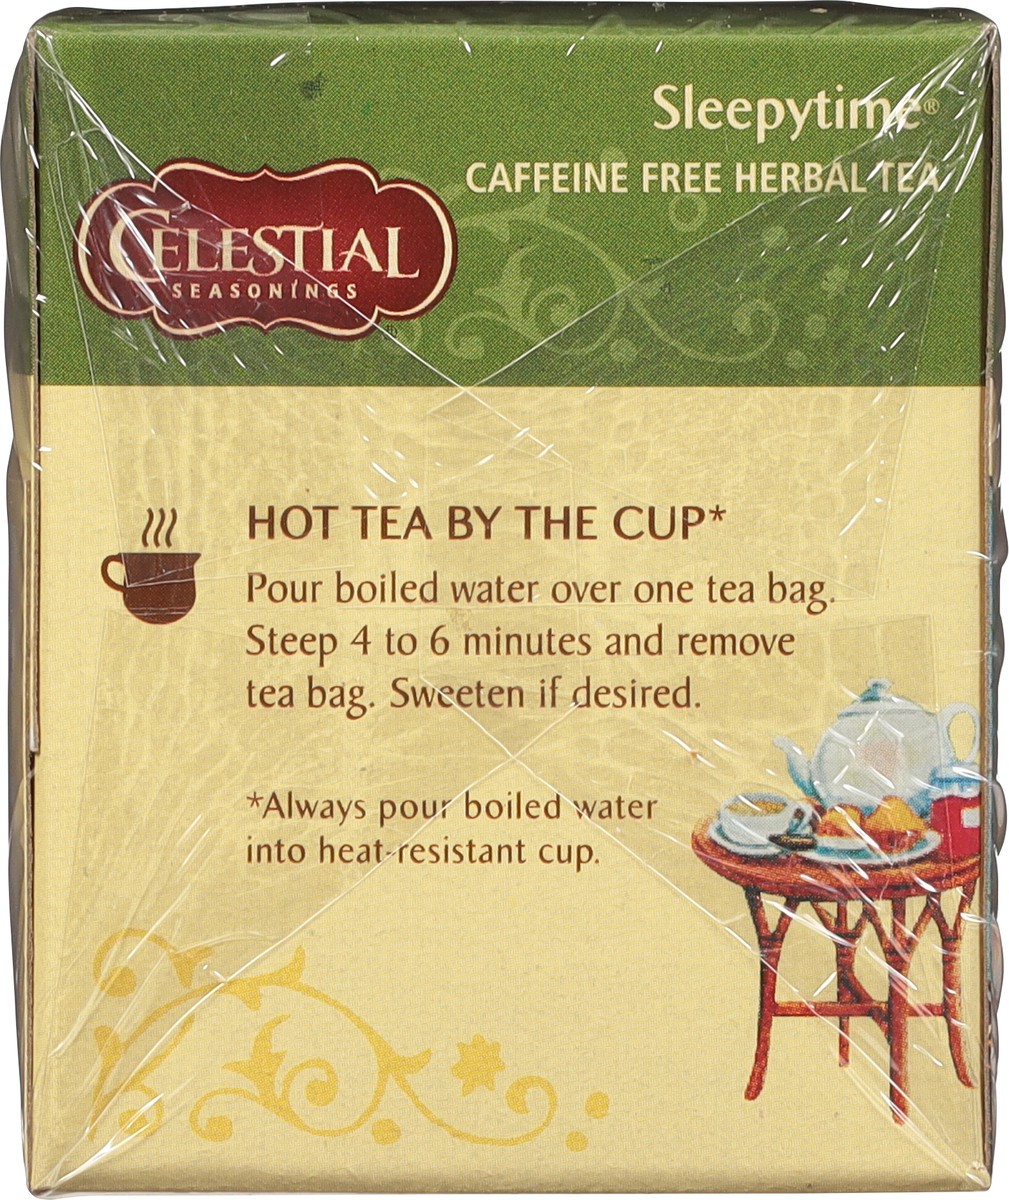 slide 5 of 8, Celestial Seasonings Sleepytime Caffeine Free Herbal Tea 20 Tea Bags, 20 ct